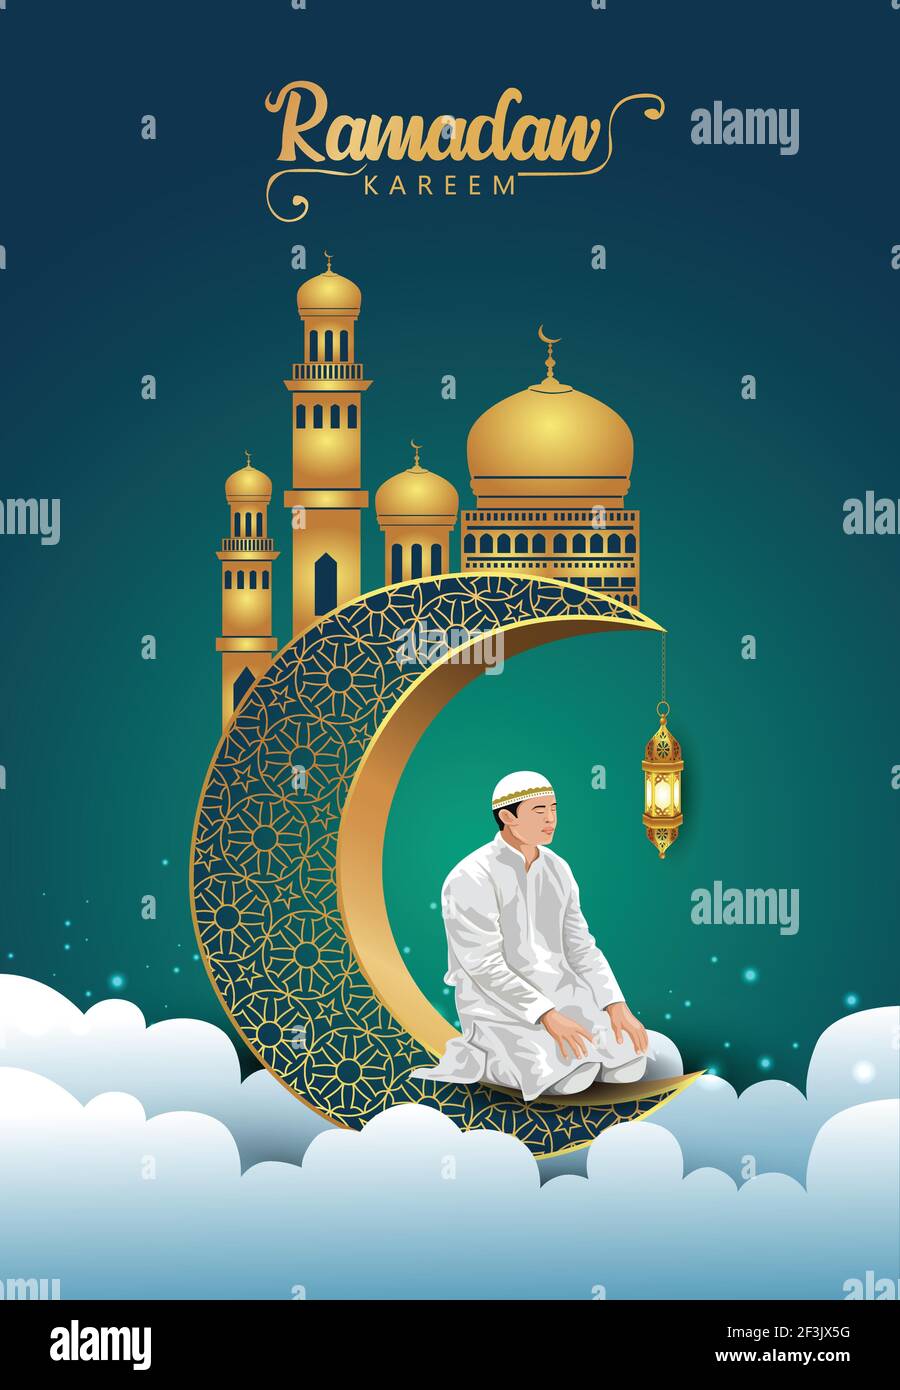 Croquis dessiné à la main de l'homme musulman priant avec la calligraphie de l'illustration d'Eid Mubarak. croissant 3d et arrière-plan de la mosquée. Illustration de Vecteur